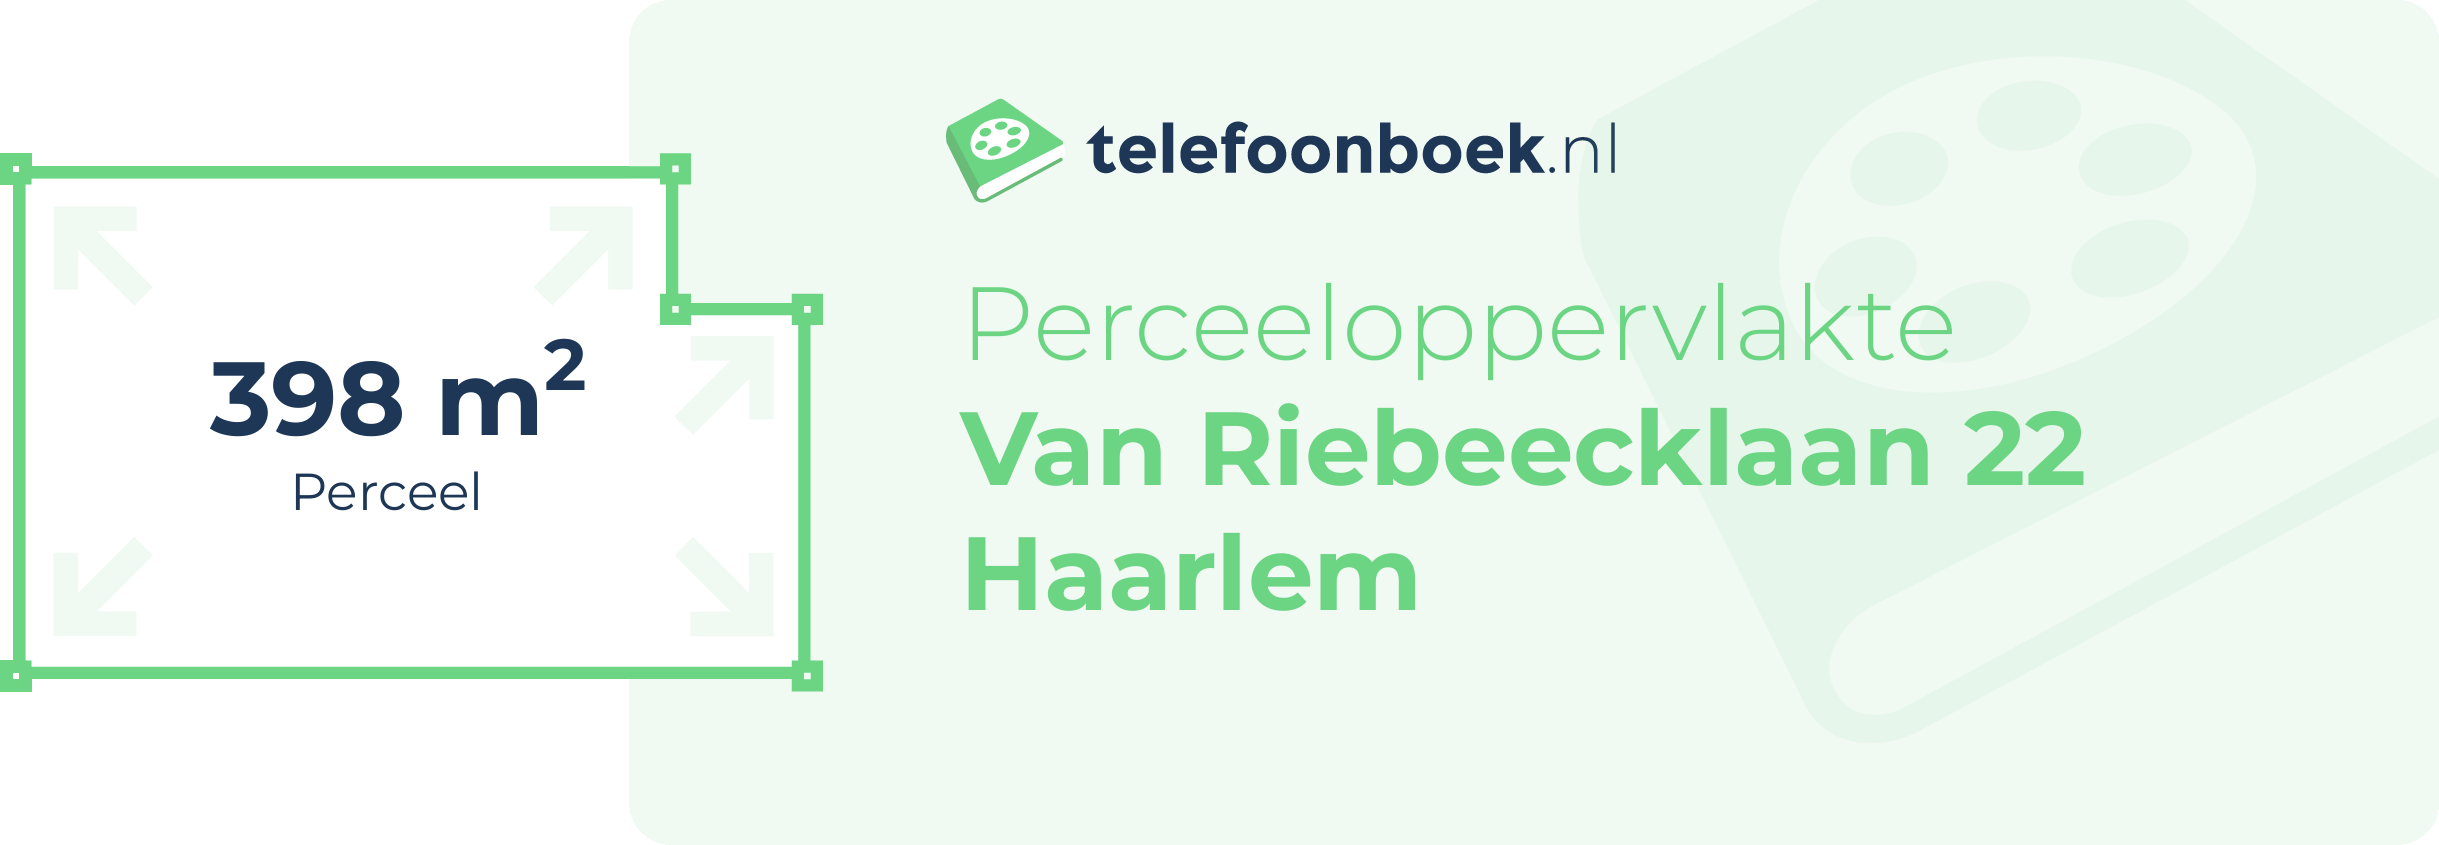 Perceeloppervlakte Van Riebeecklaan 22 Haarlem